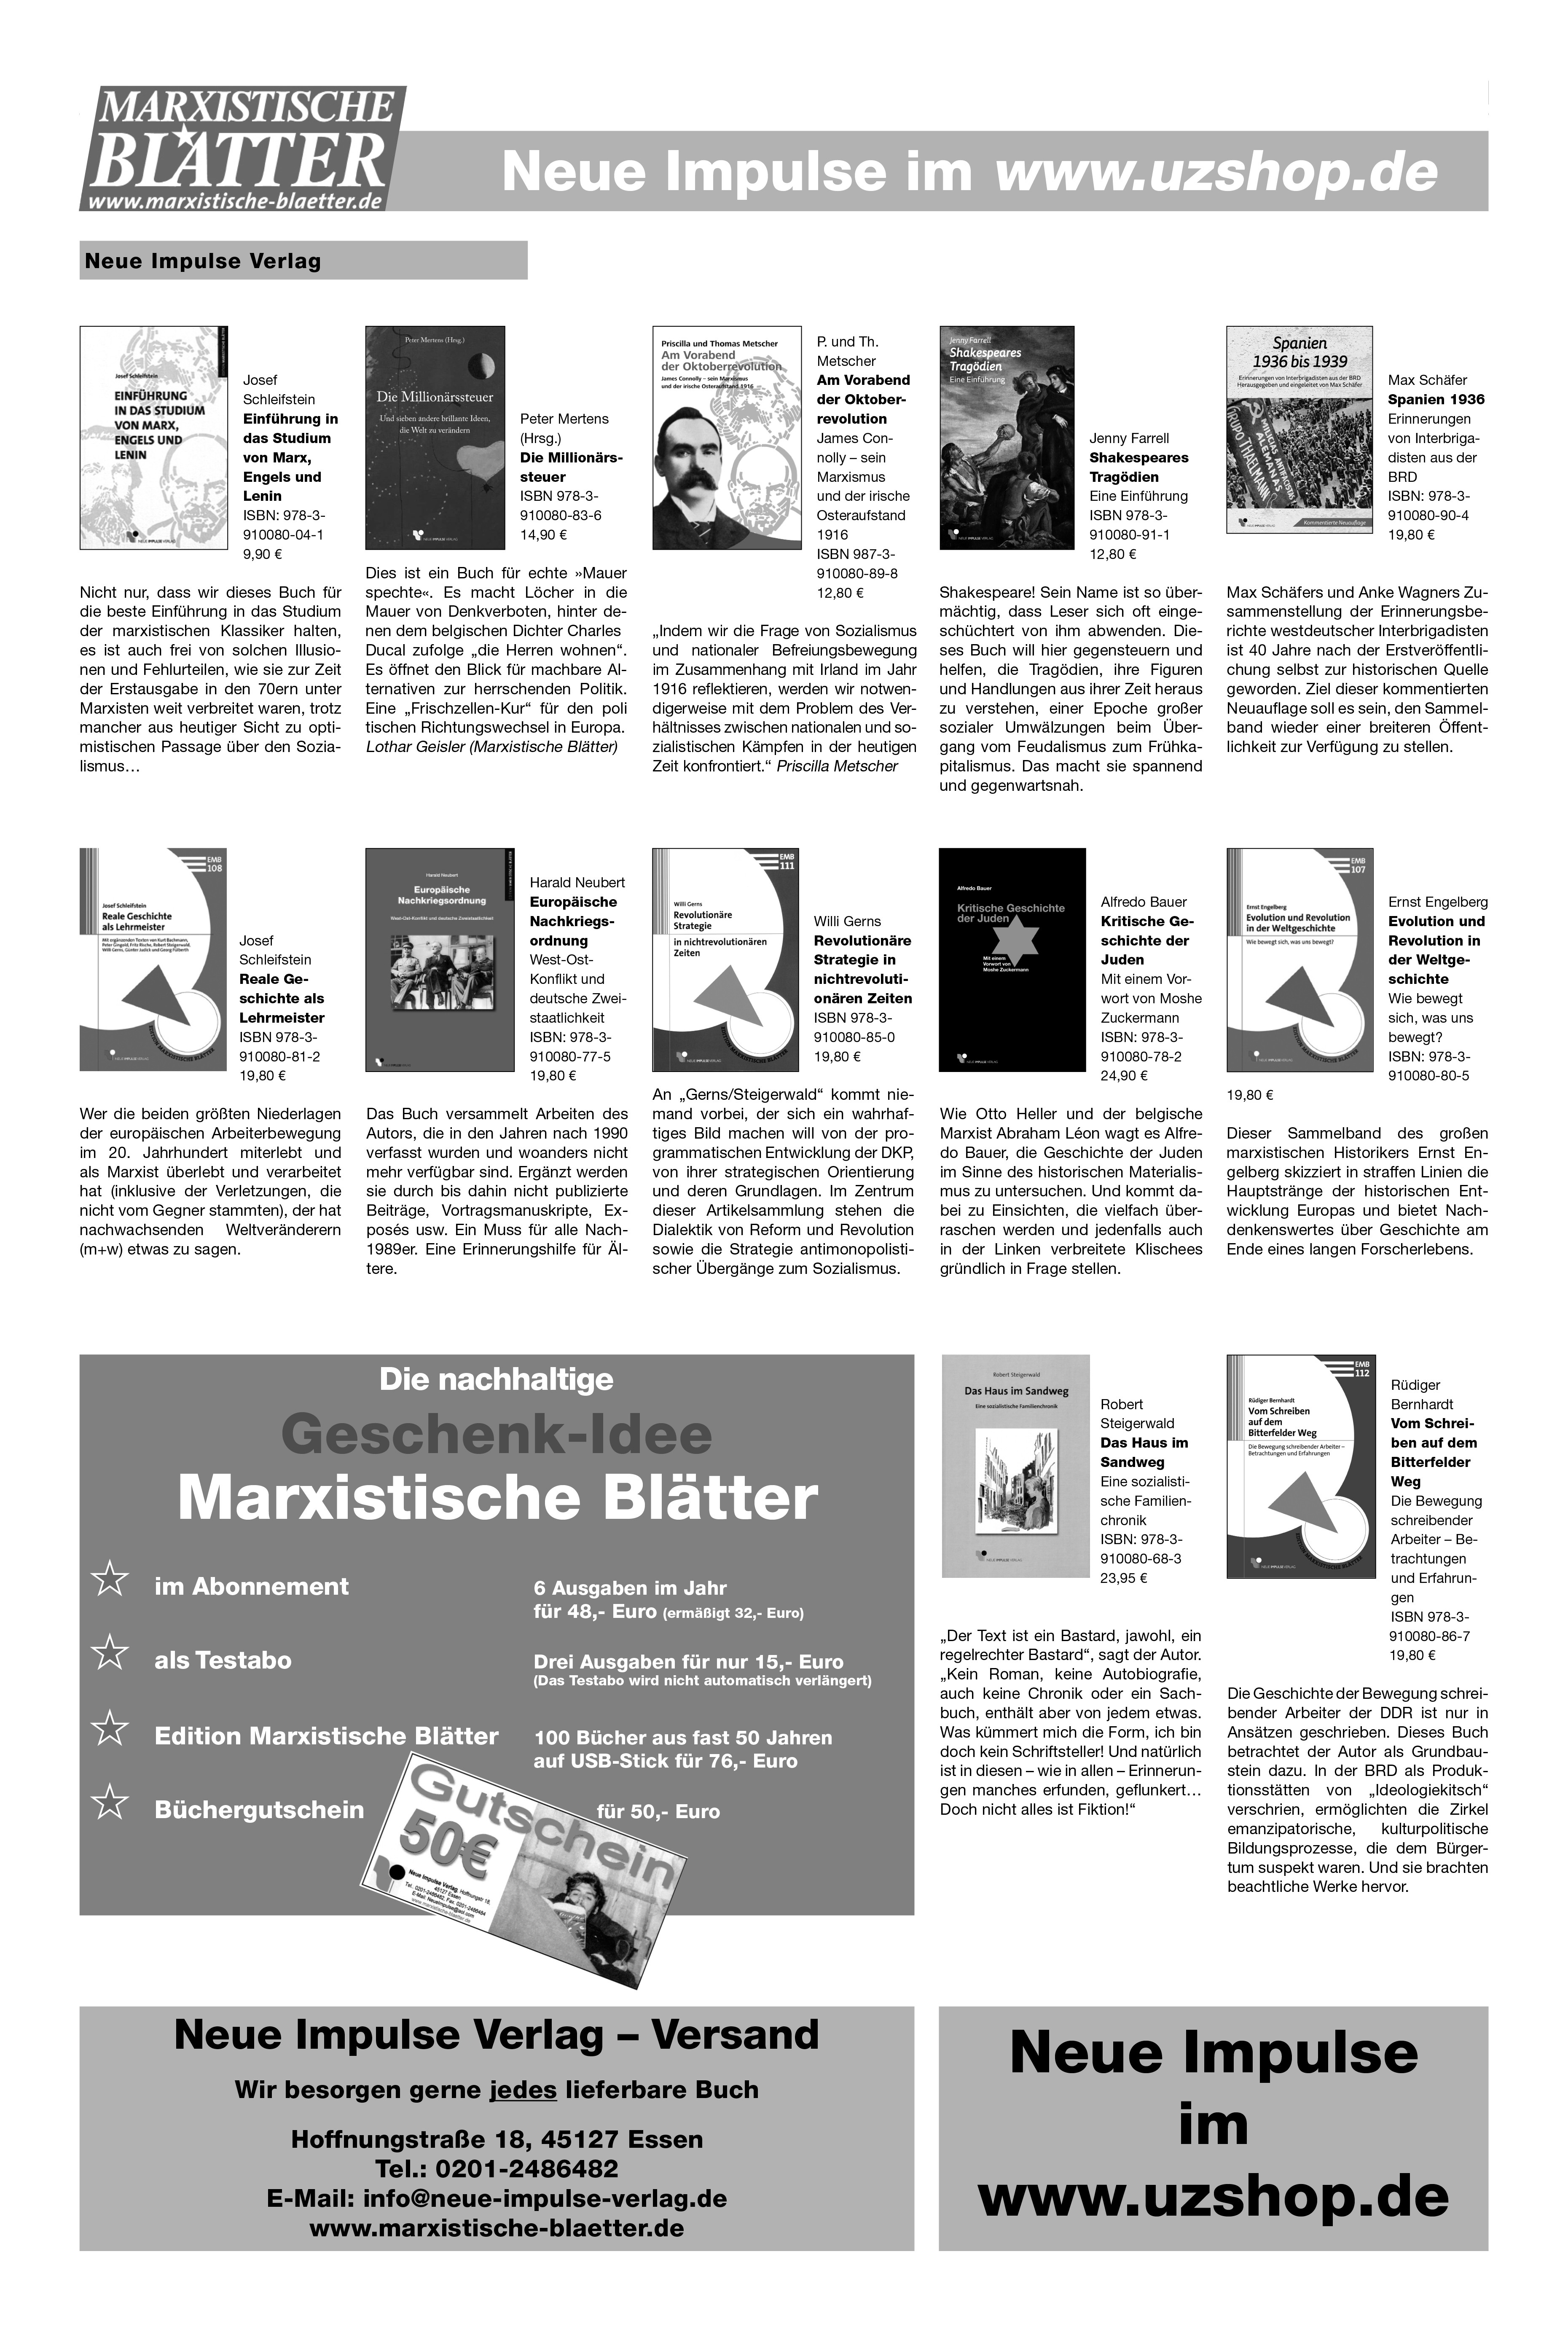 neue impulse im www uzshop de - Neue Impulse im www.uzshop.de - Anzeigen - Anzeigen